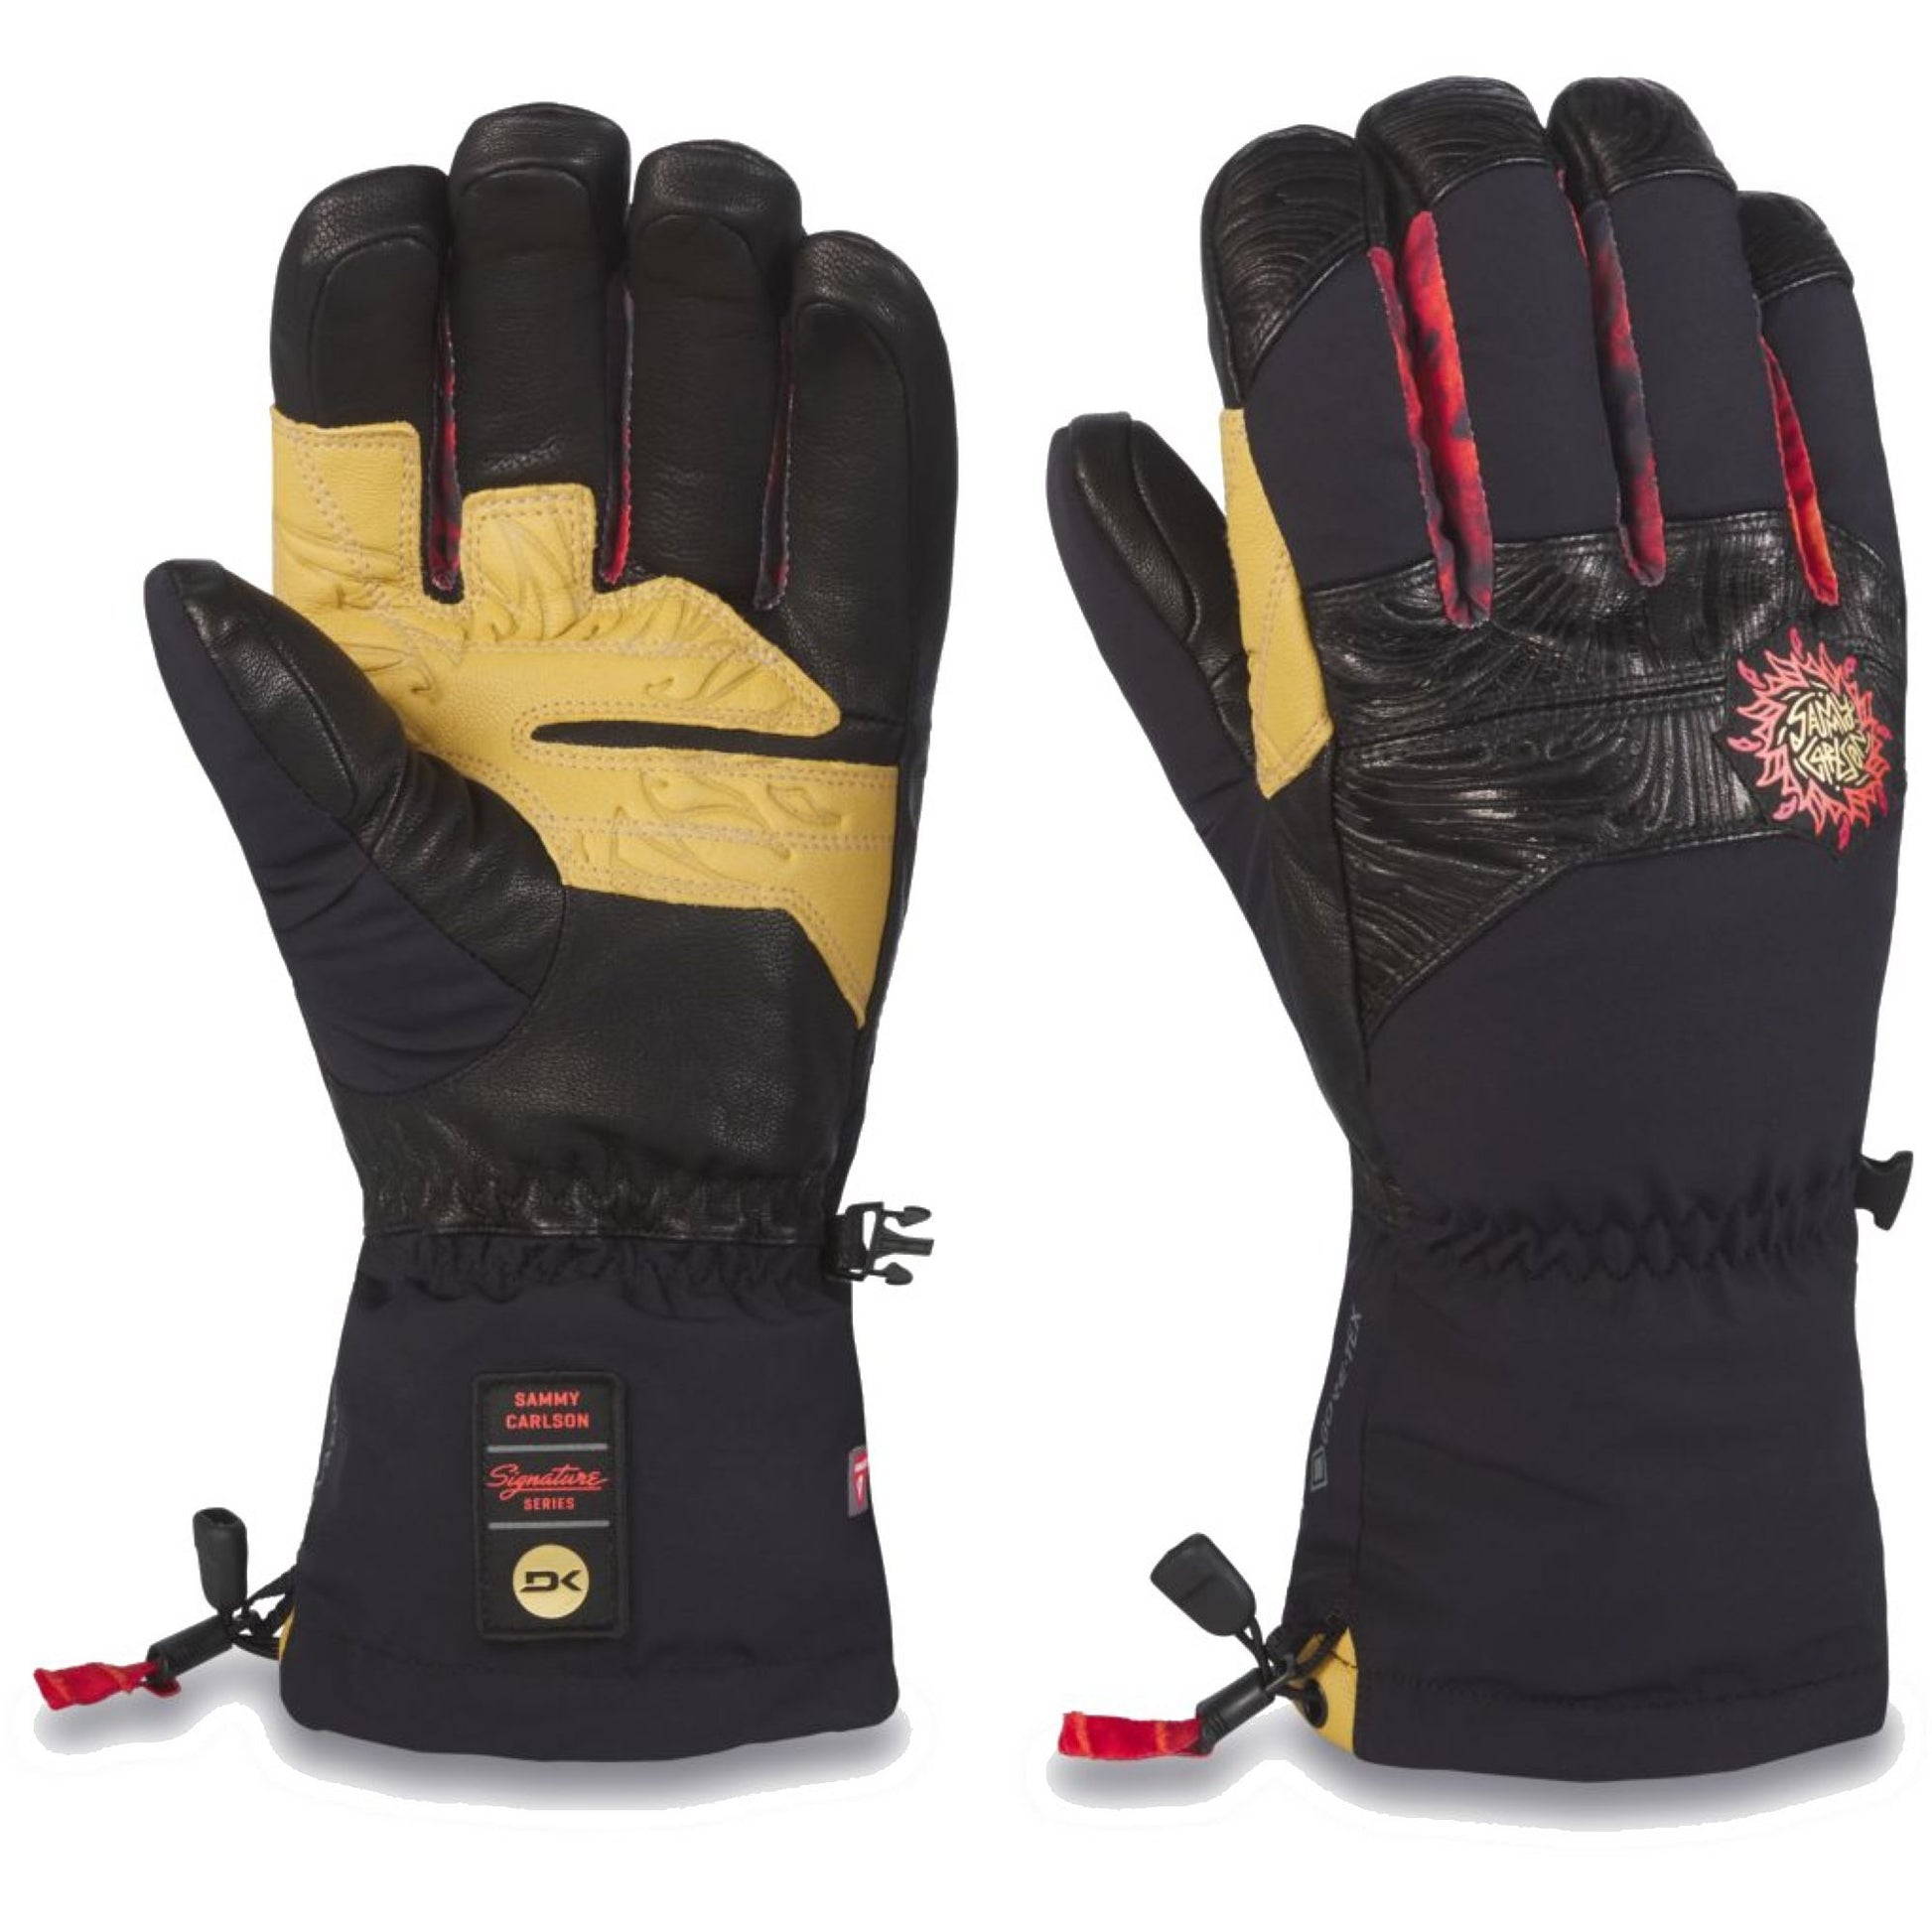 Dakine Team Excursion GORE-TEX Glove Black Sammy Carlson Snow Gloves